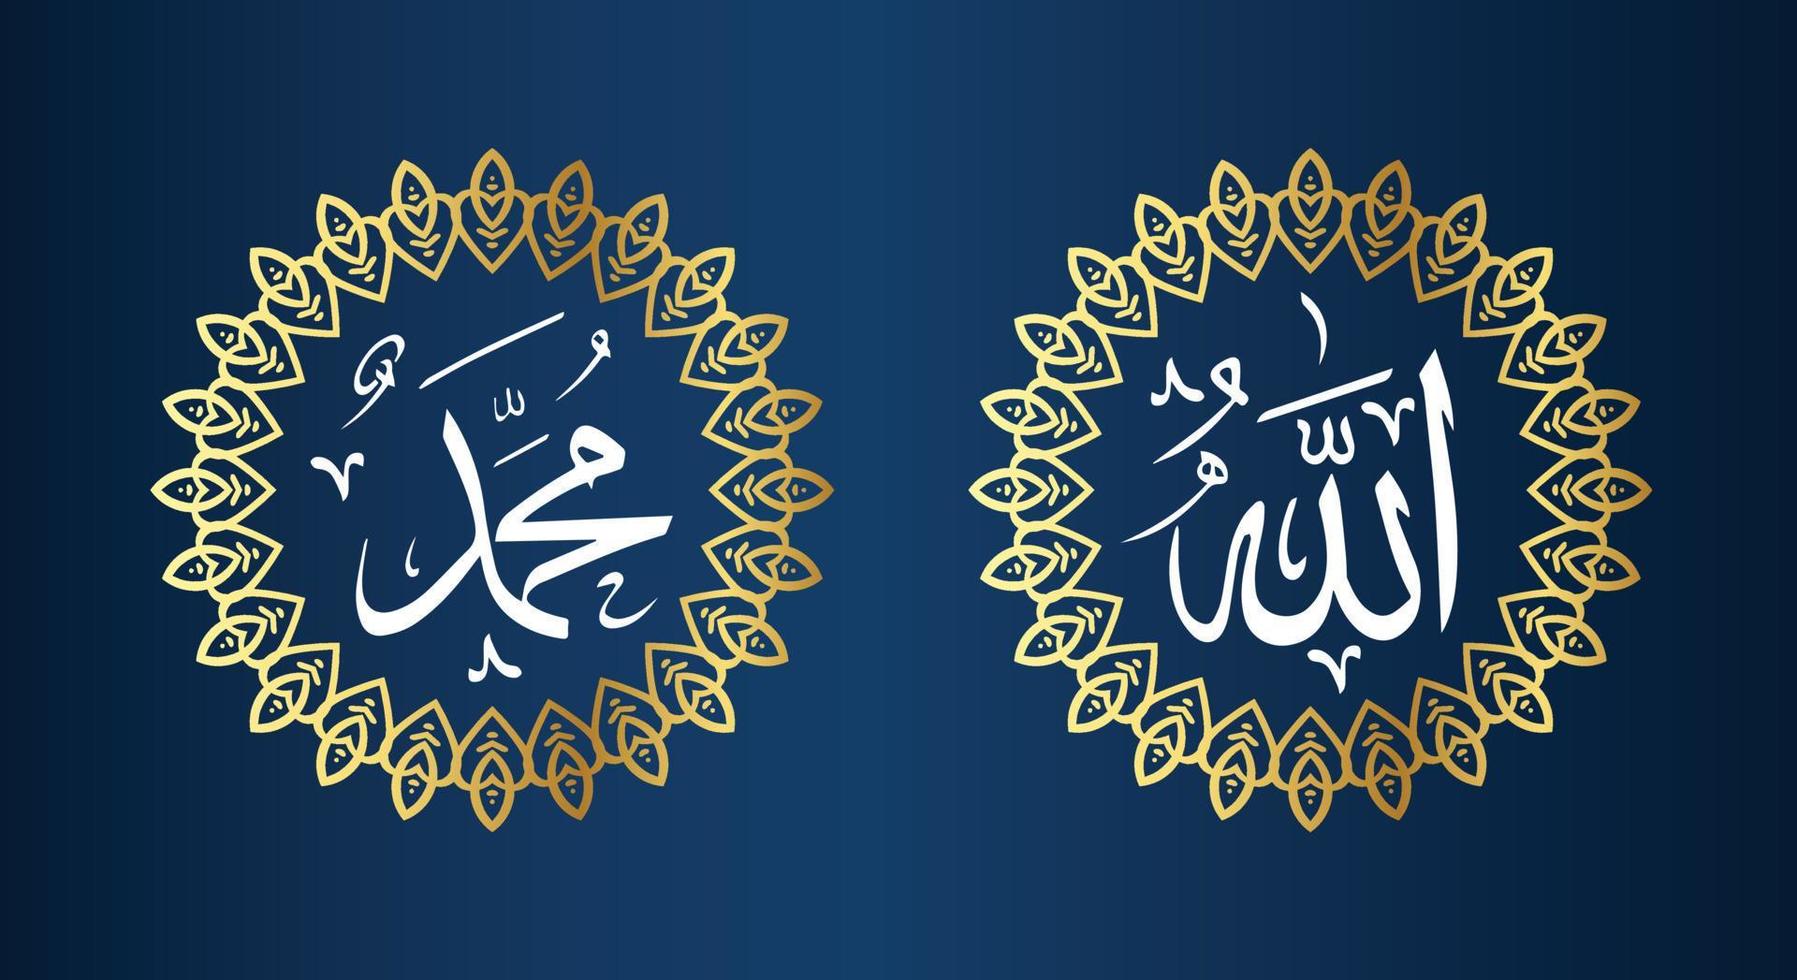 Allah Mohammed Arabisch schoonschrift met cirkel kader en gouden kleur met blauw achtergrond vector